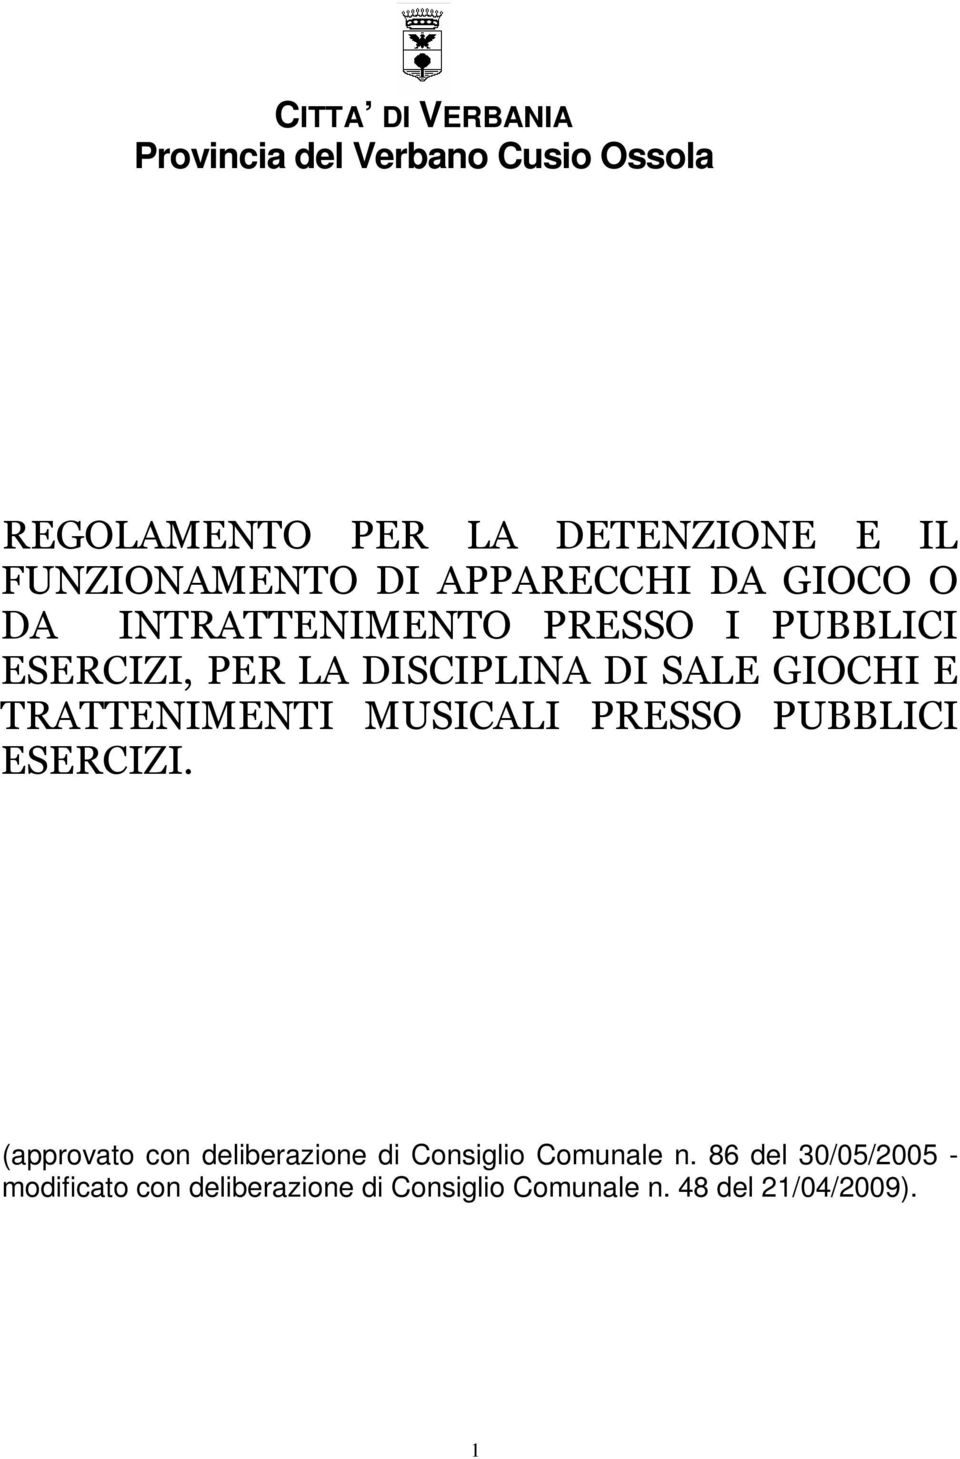 GIOCHI E TRATTENIMENTI MUSICALI PRESSO PUBBLICI ESERCIZI.